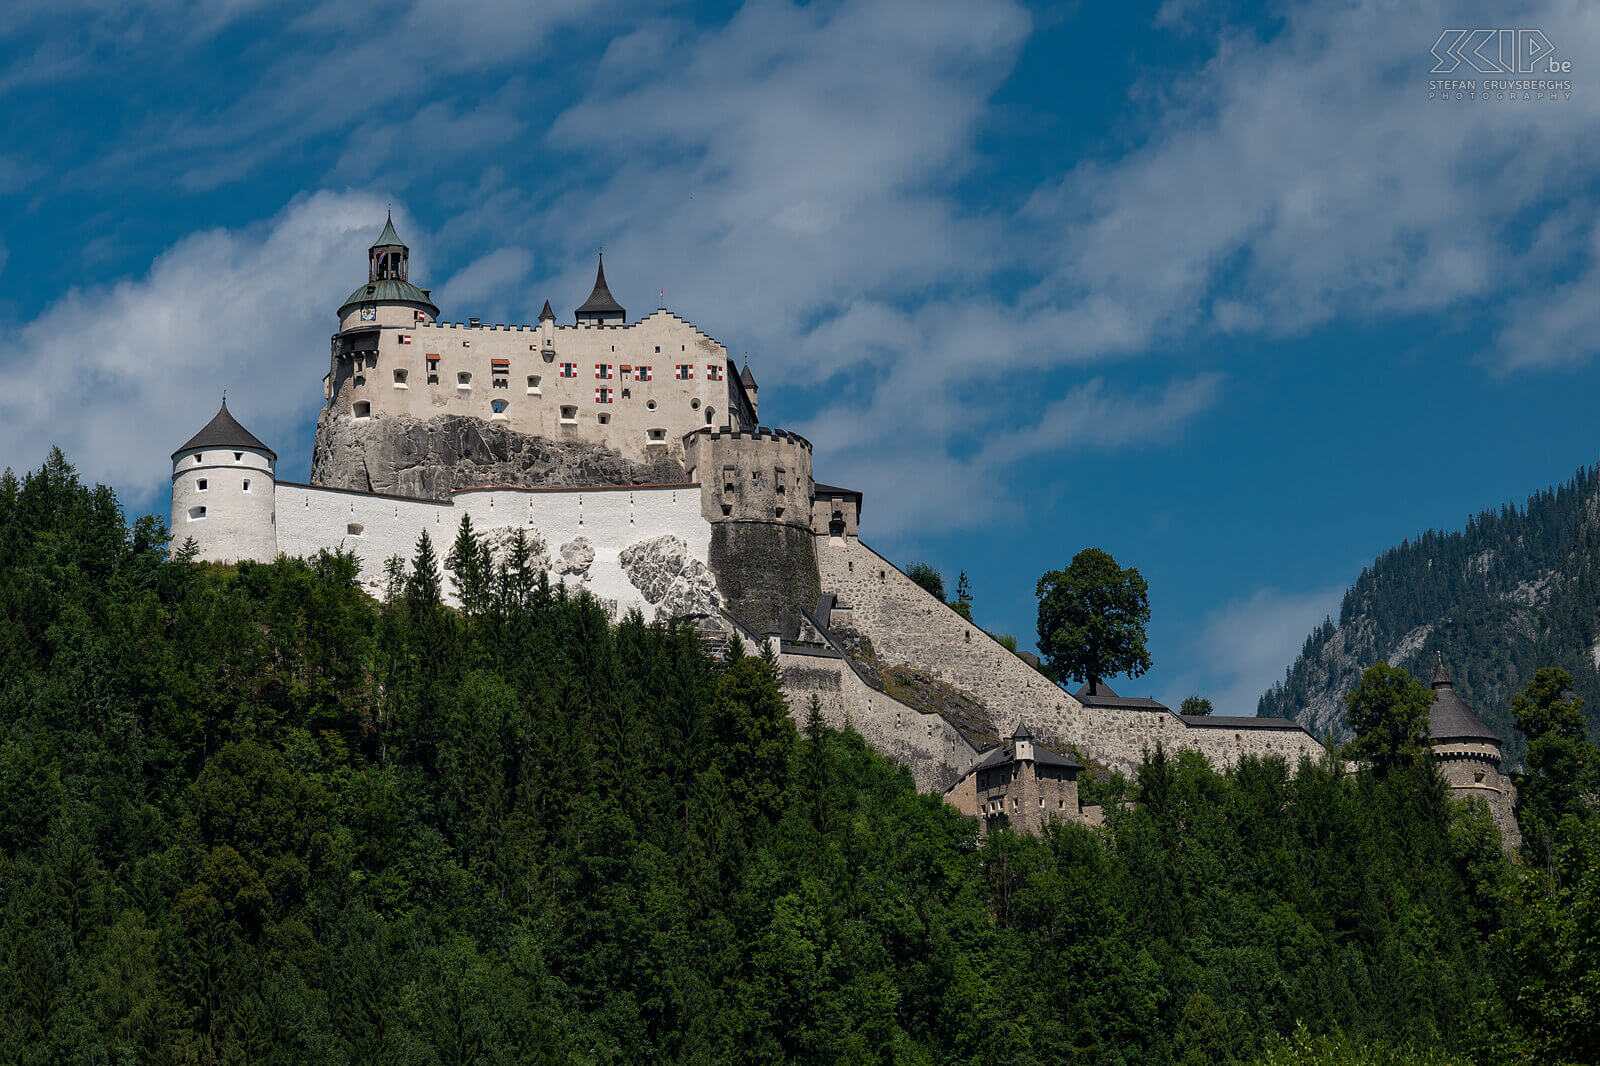 Burcht Hohenwerfen De middeleeuwse burcht van Hohenwerfen in SalzburgerLand is één van de mooiste kastelen van Oostenrijk en fantatisch gelegen op een 113 meter hoge rots. Ze deed in de loop der jaren dienst als militaire basis, residentie, jachtpaviljoen en gevangenis tijdens WO II. Stefan Cruysberghs